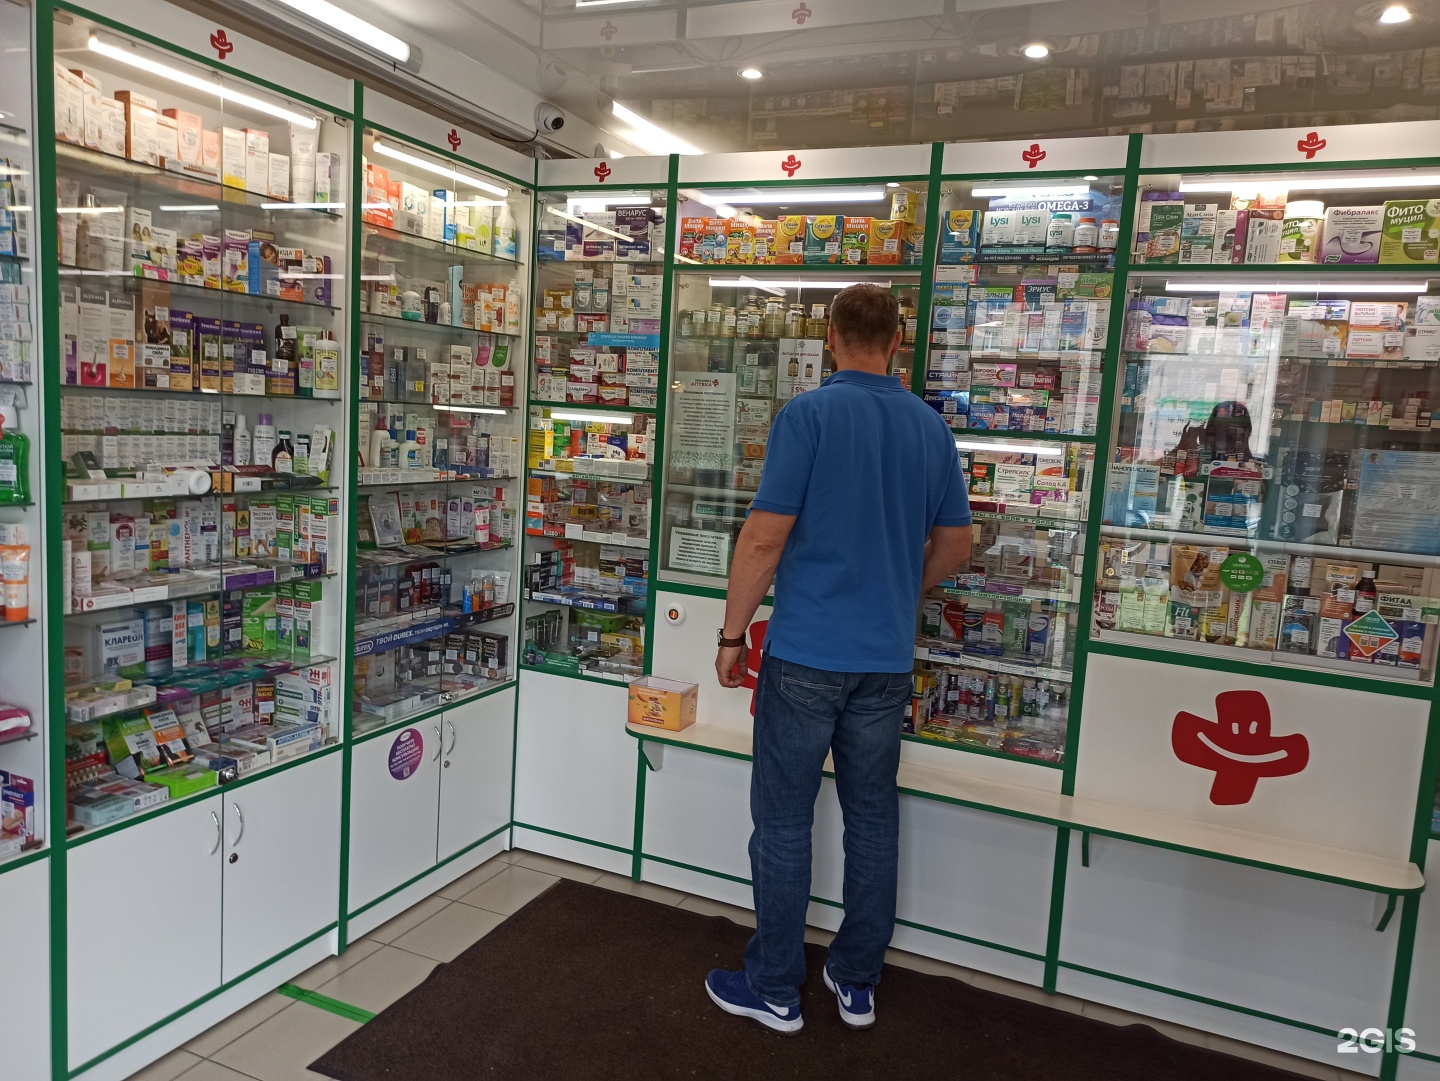 аптеки санкт петербурга